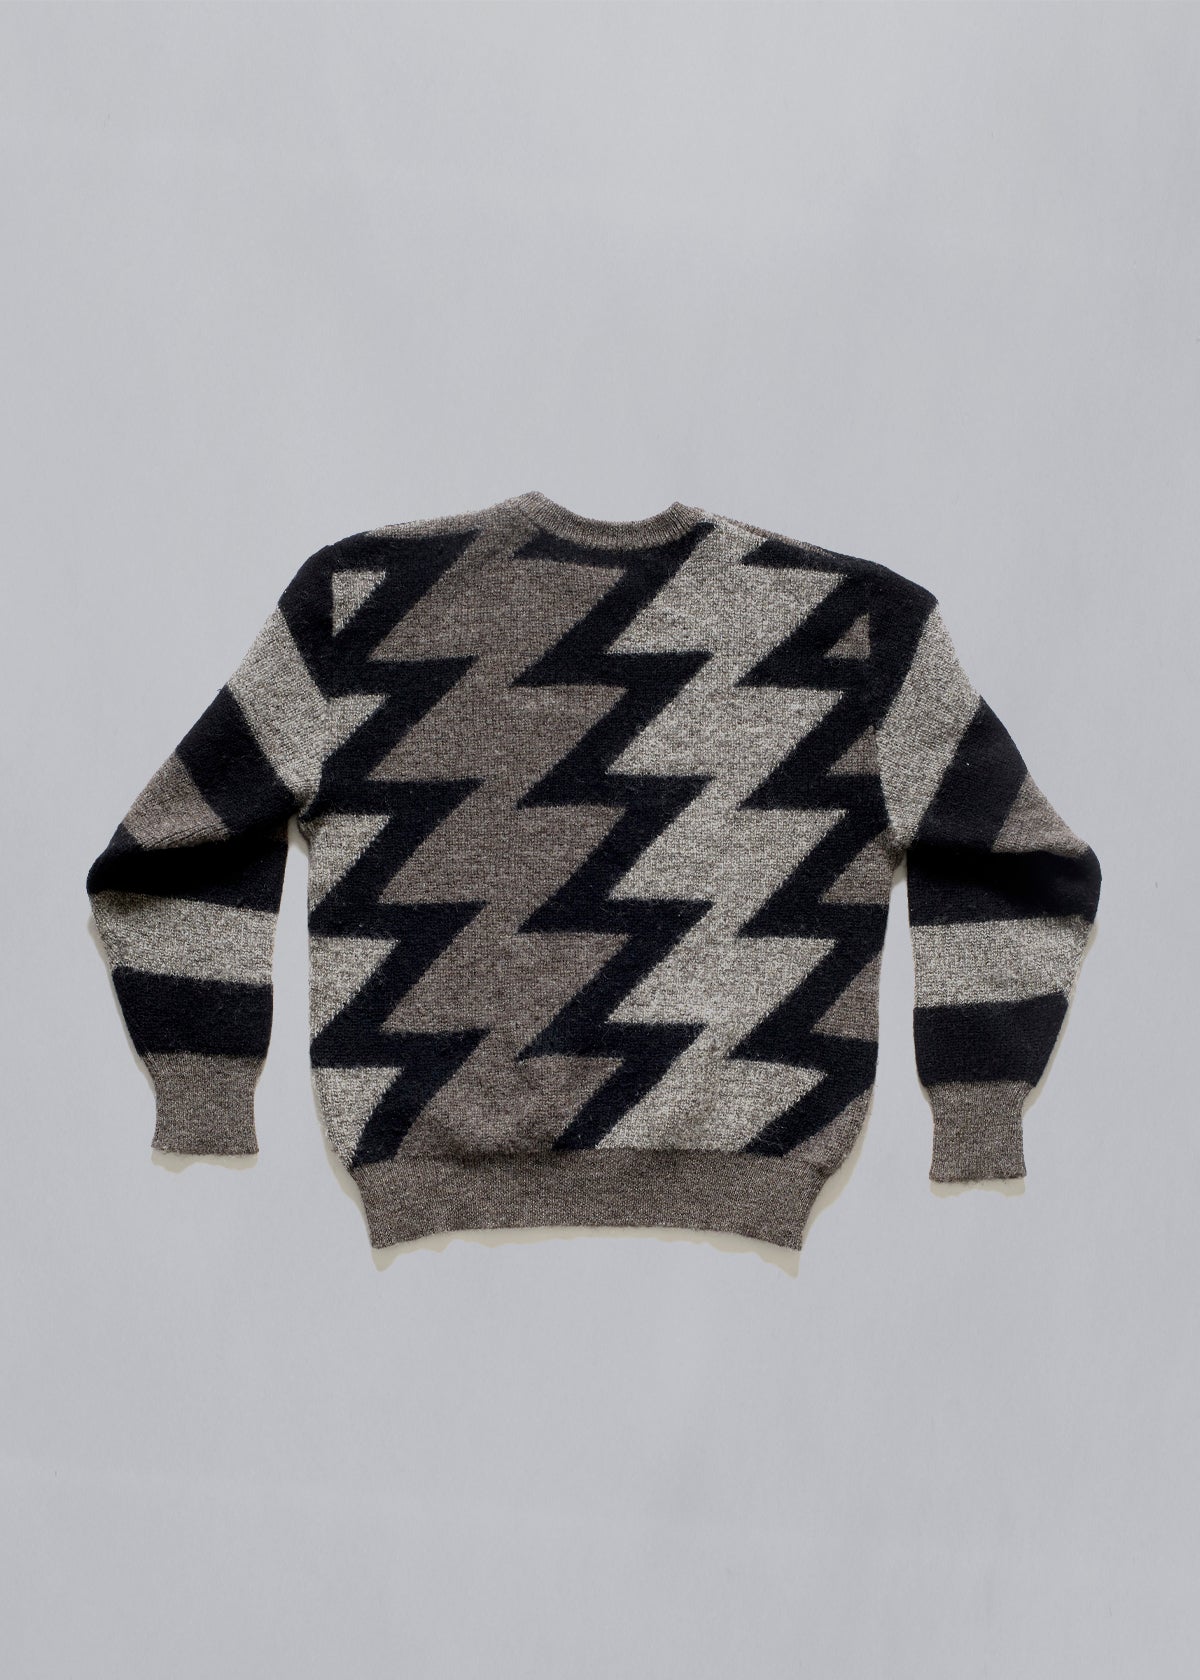 ZigZag Pattern Wool Crewneck Knit 1980's - Medium